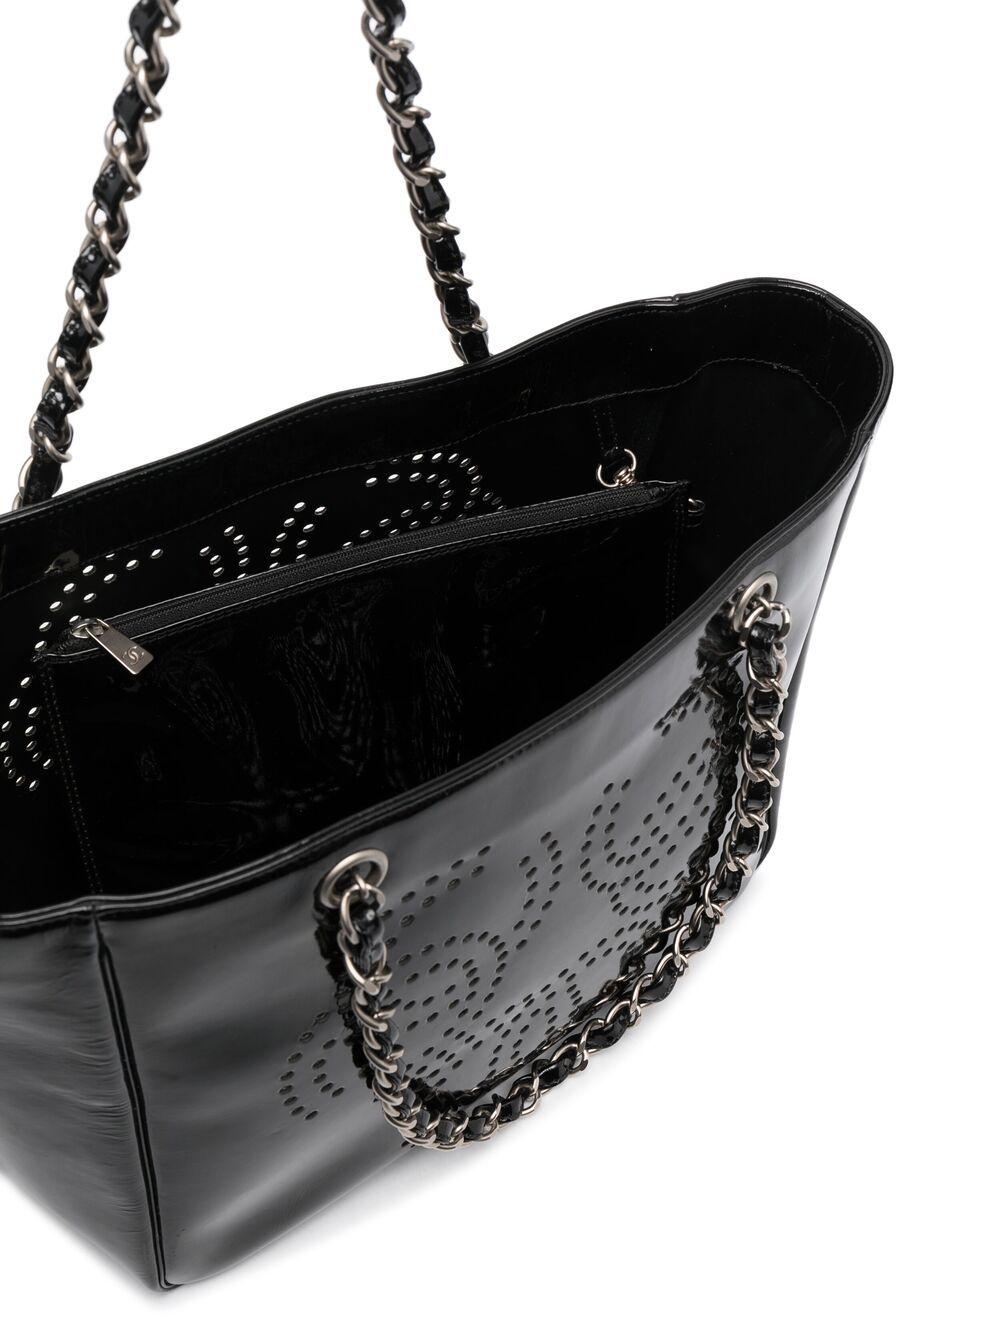 Women's Chanel Black Leather Shoulder Tote Bag